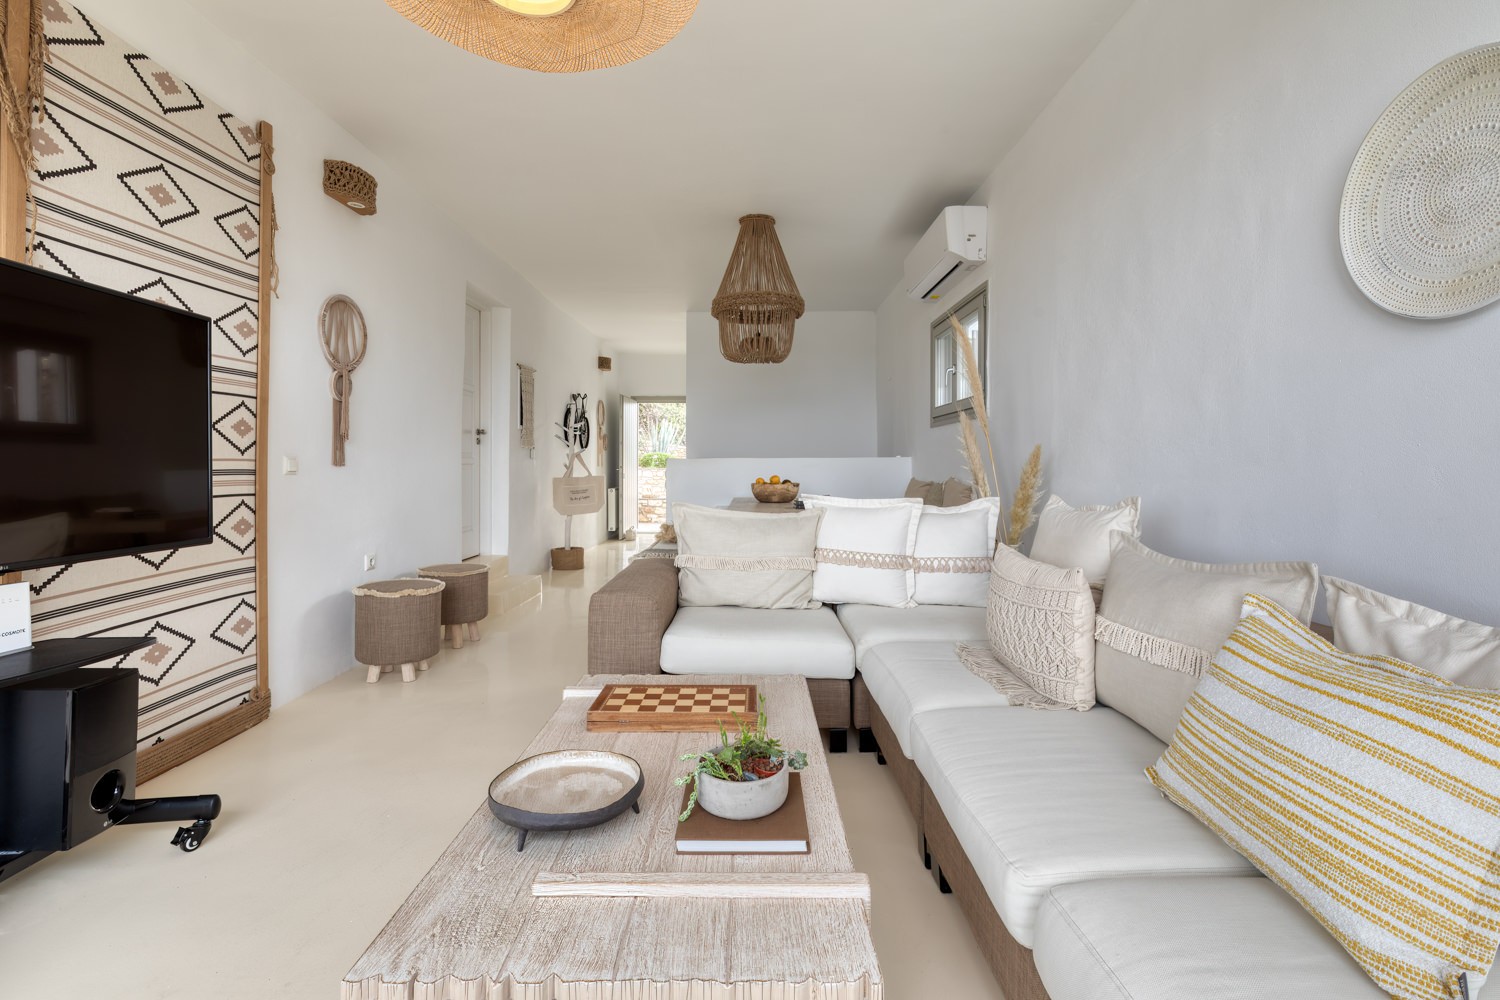 Amalgam Homes Zefyros villa, Paros island: image interior gallery